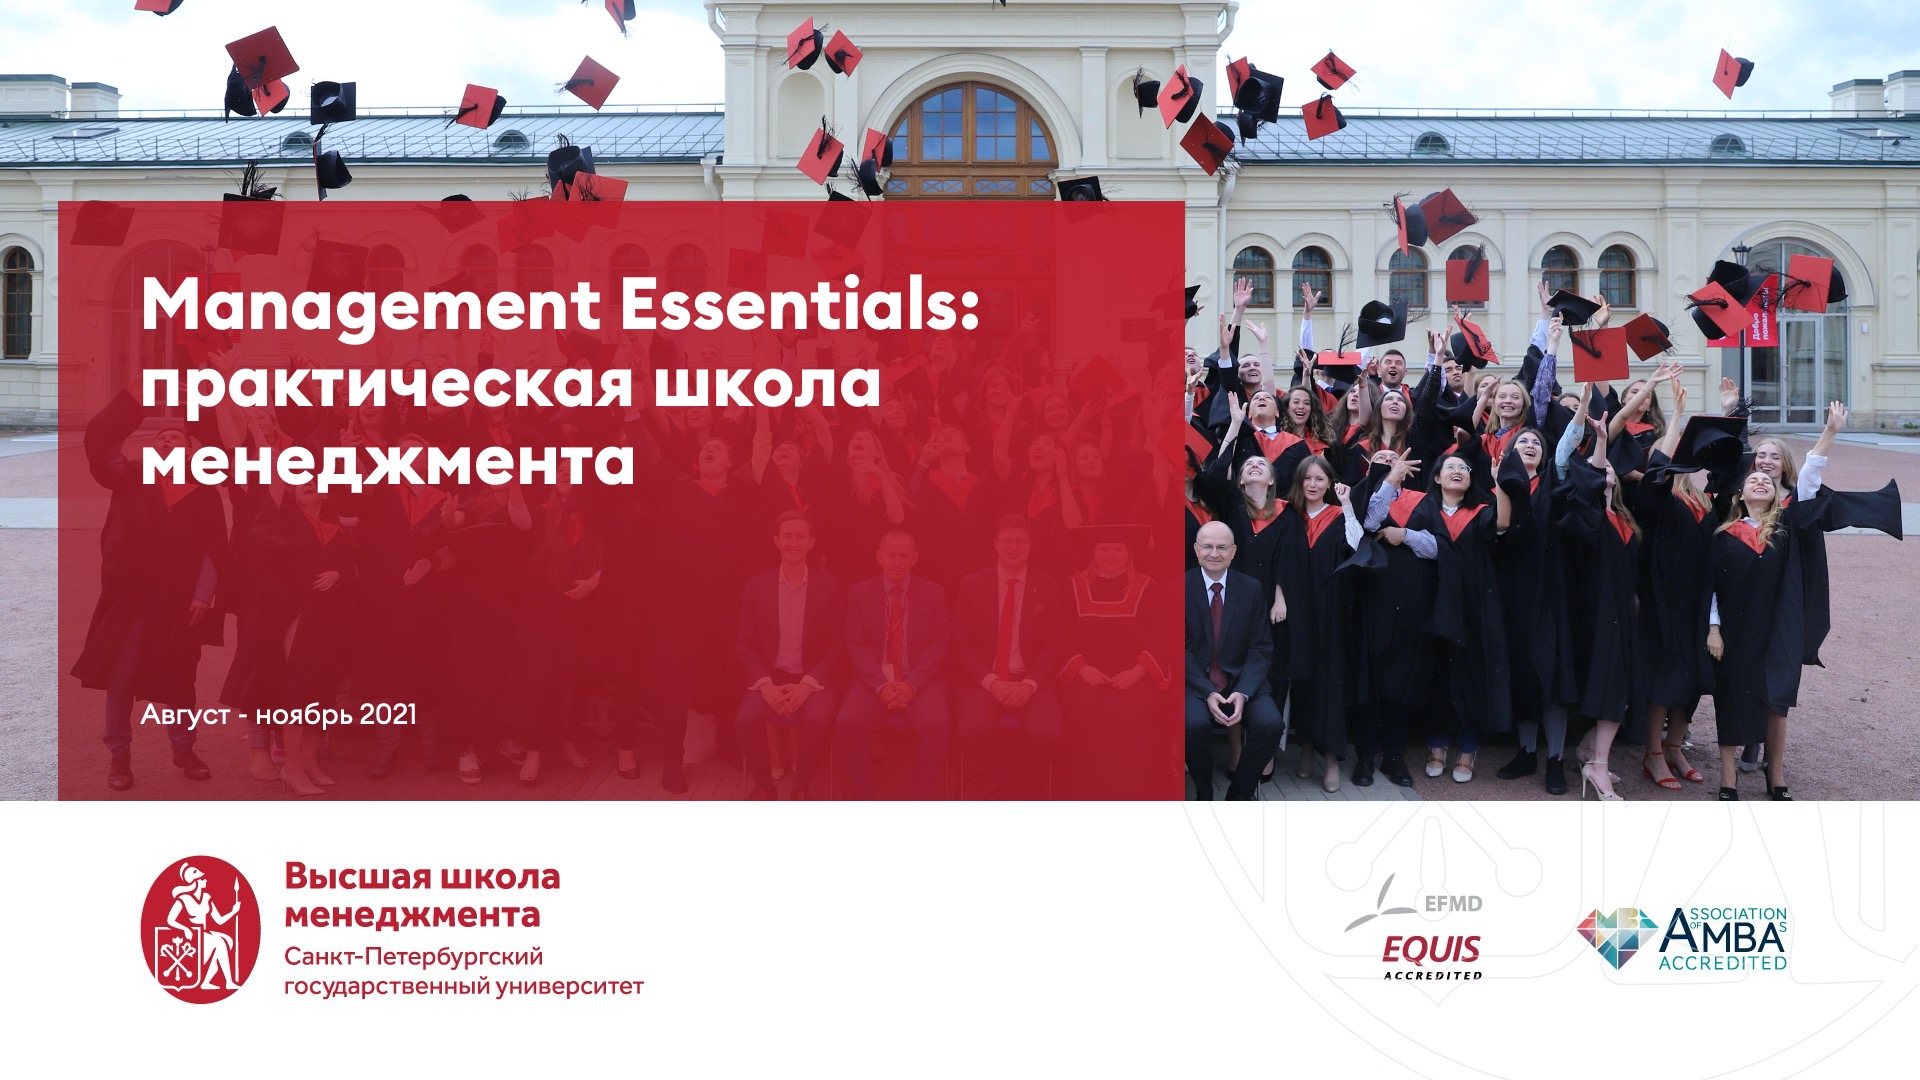 Management Essentials: Практическая школа менеджмента для ПАО Газпром